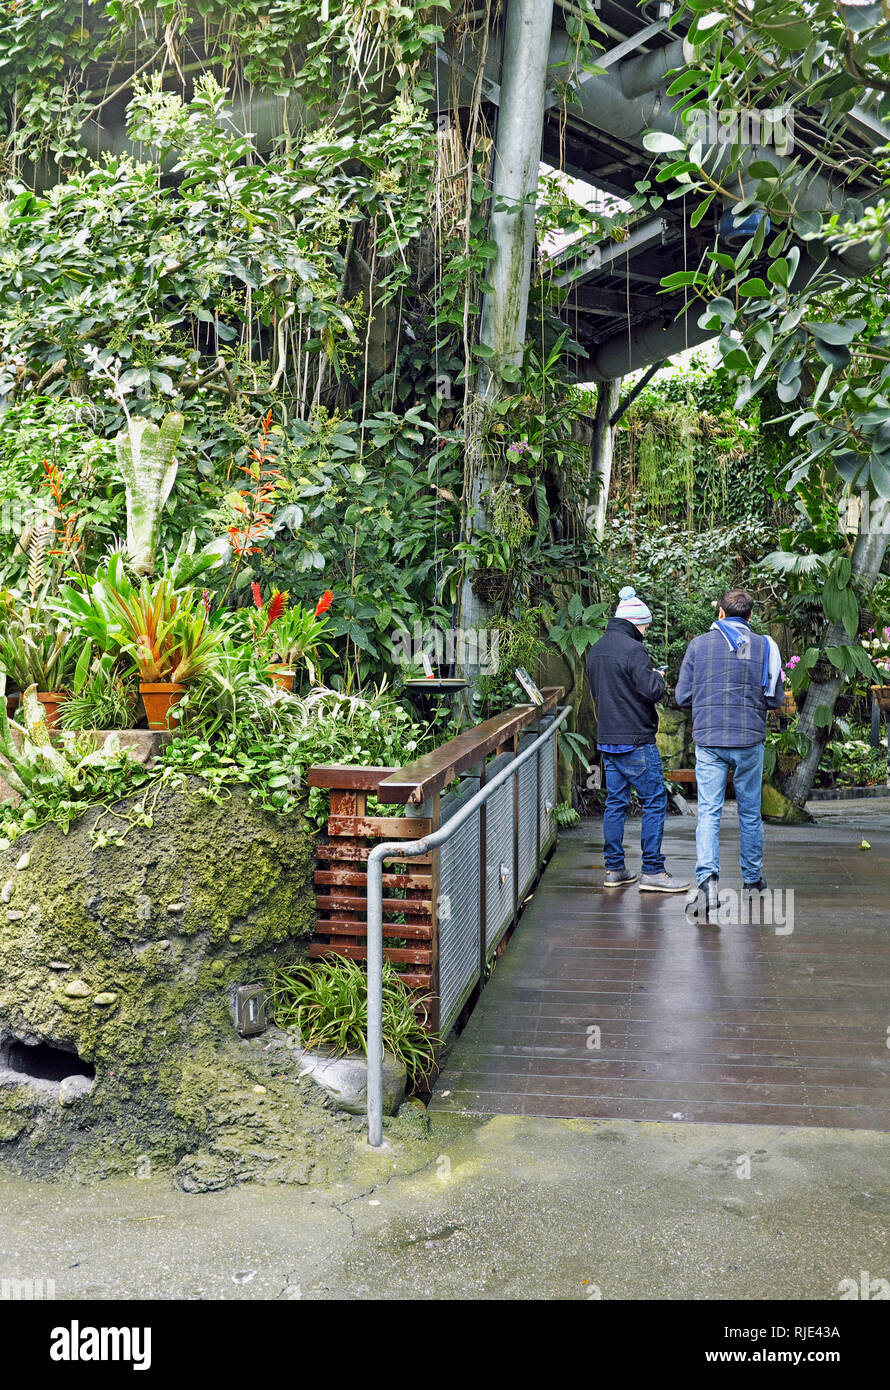 Besucher, die an der Cleveland botanischen Gärten in Cleveland, Ohio, USA Spaziergang durch die Costa Rica Regenwald inspiriert Gewächshaus Ausstellung. Stockfoto